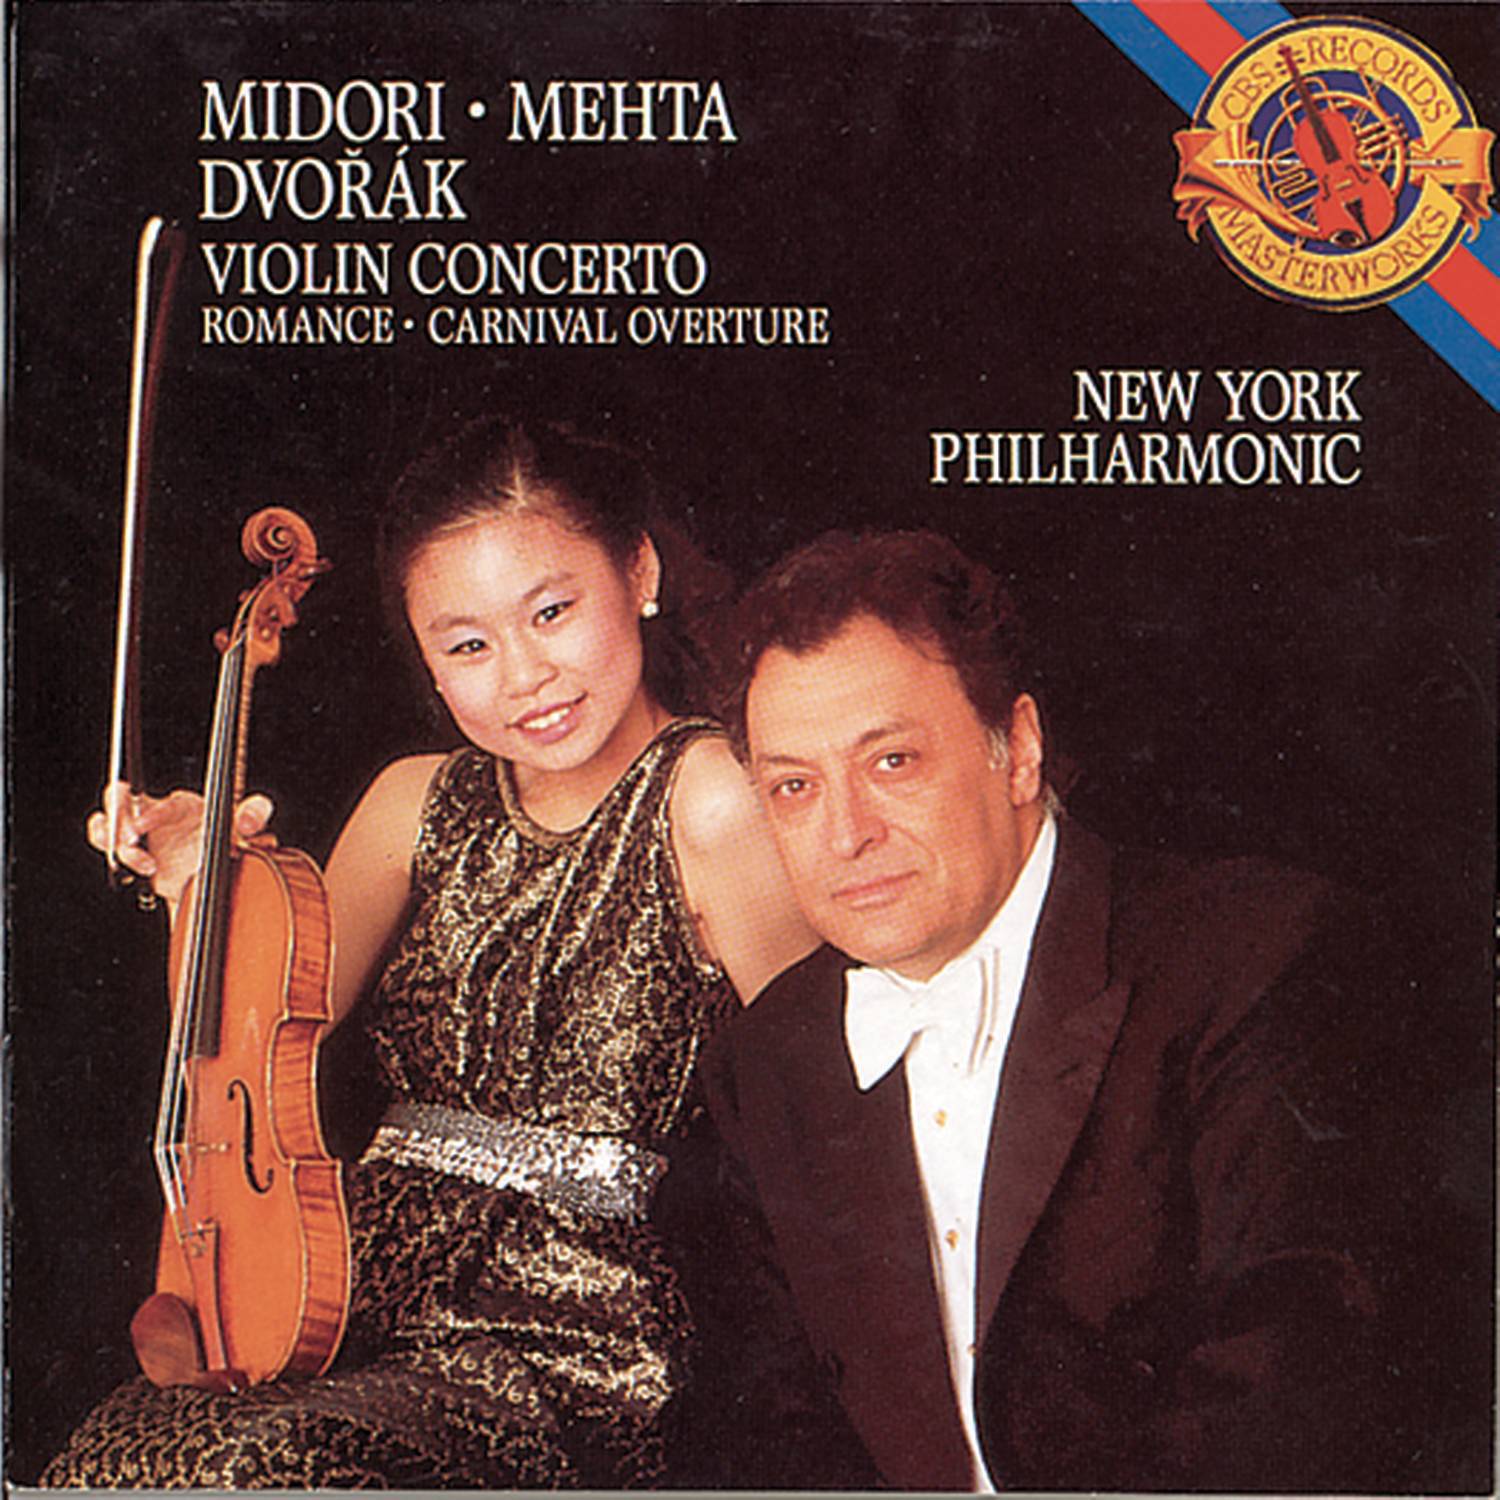 Concerto for Violin and Orchestra in A Minor, Op. 53: II. Adagio, ma non troppo